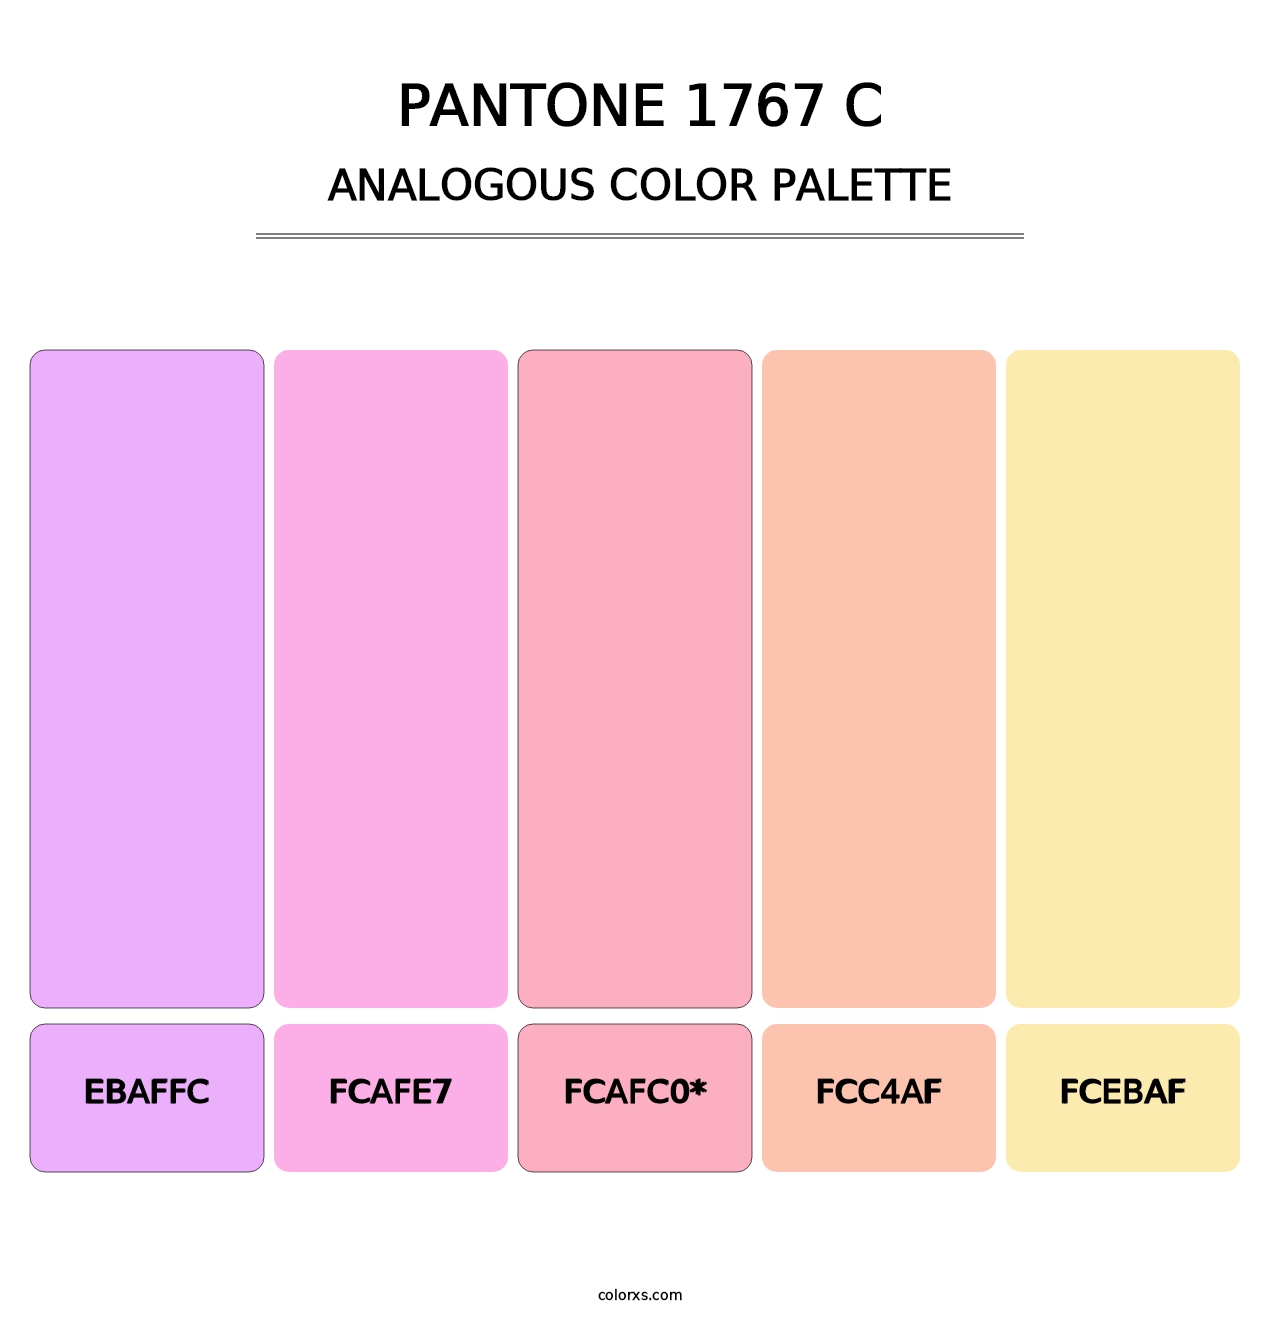 PANTONE 1767 C - Analogous Color Palette